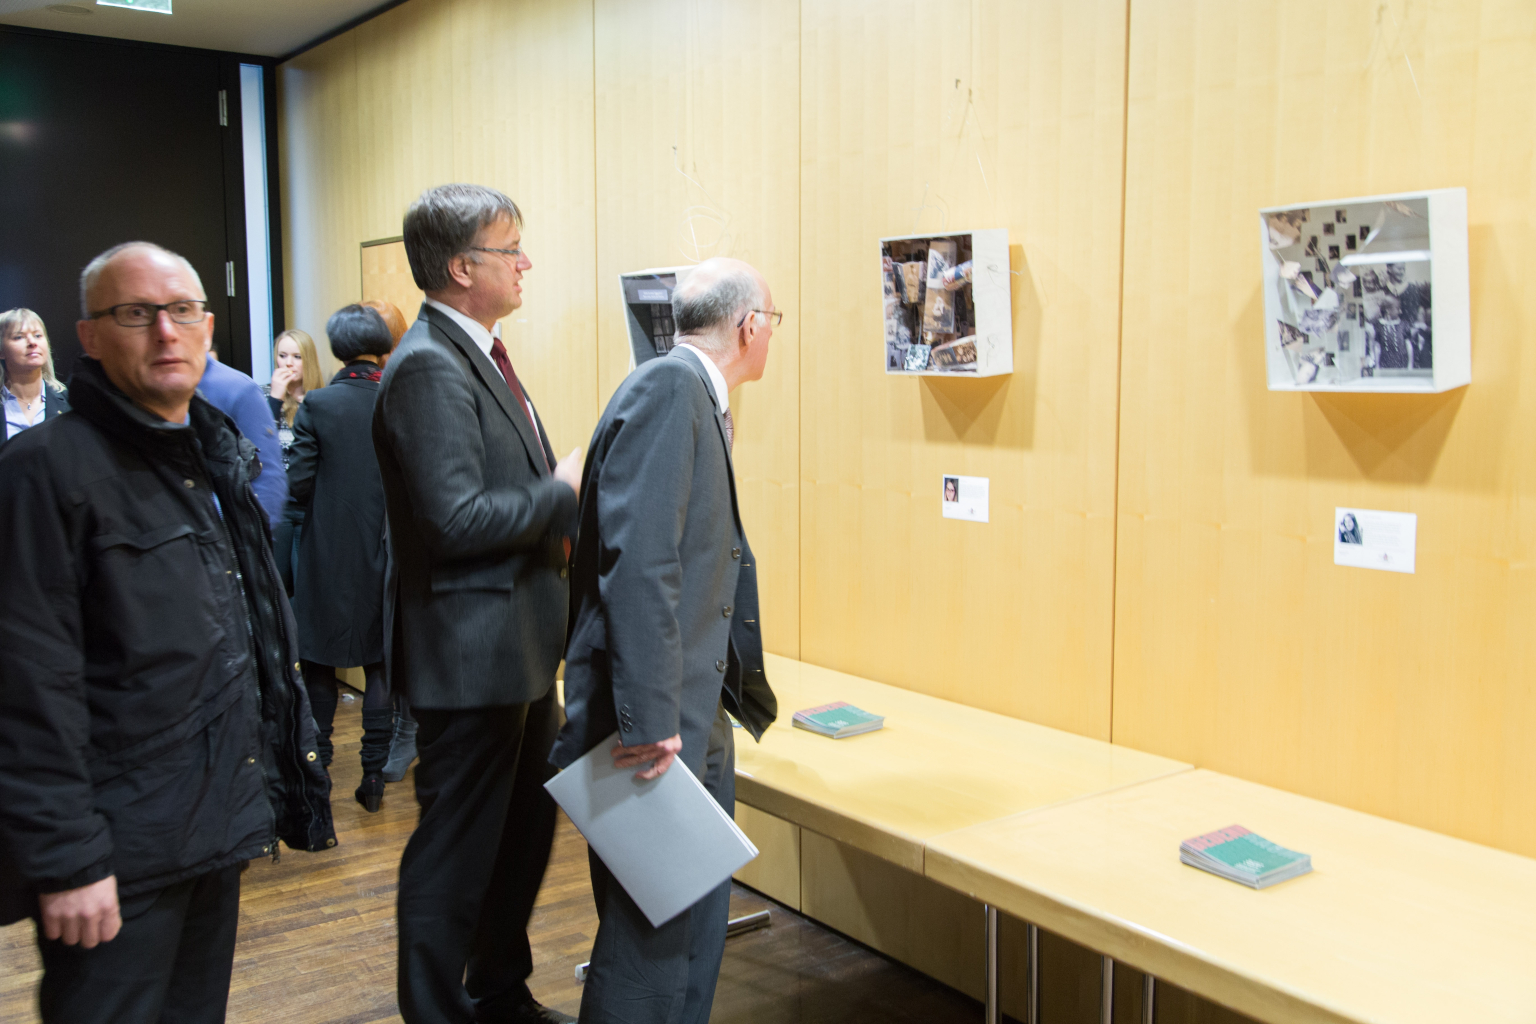 Bundespräsident Norbert Lammers besieht sich die "Gedenk-Räume" in Erinnerung an Familie Heli.